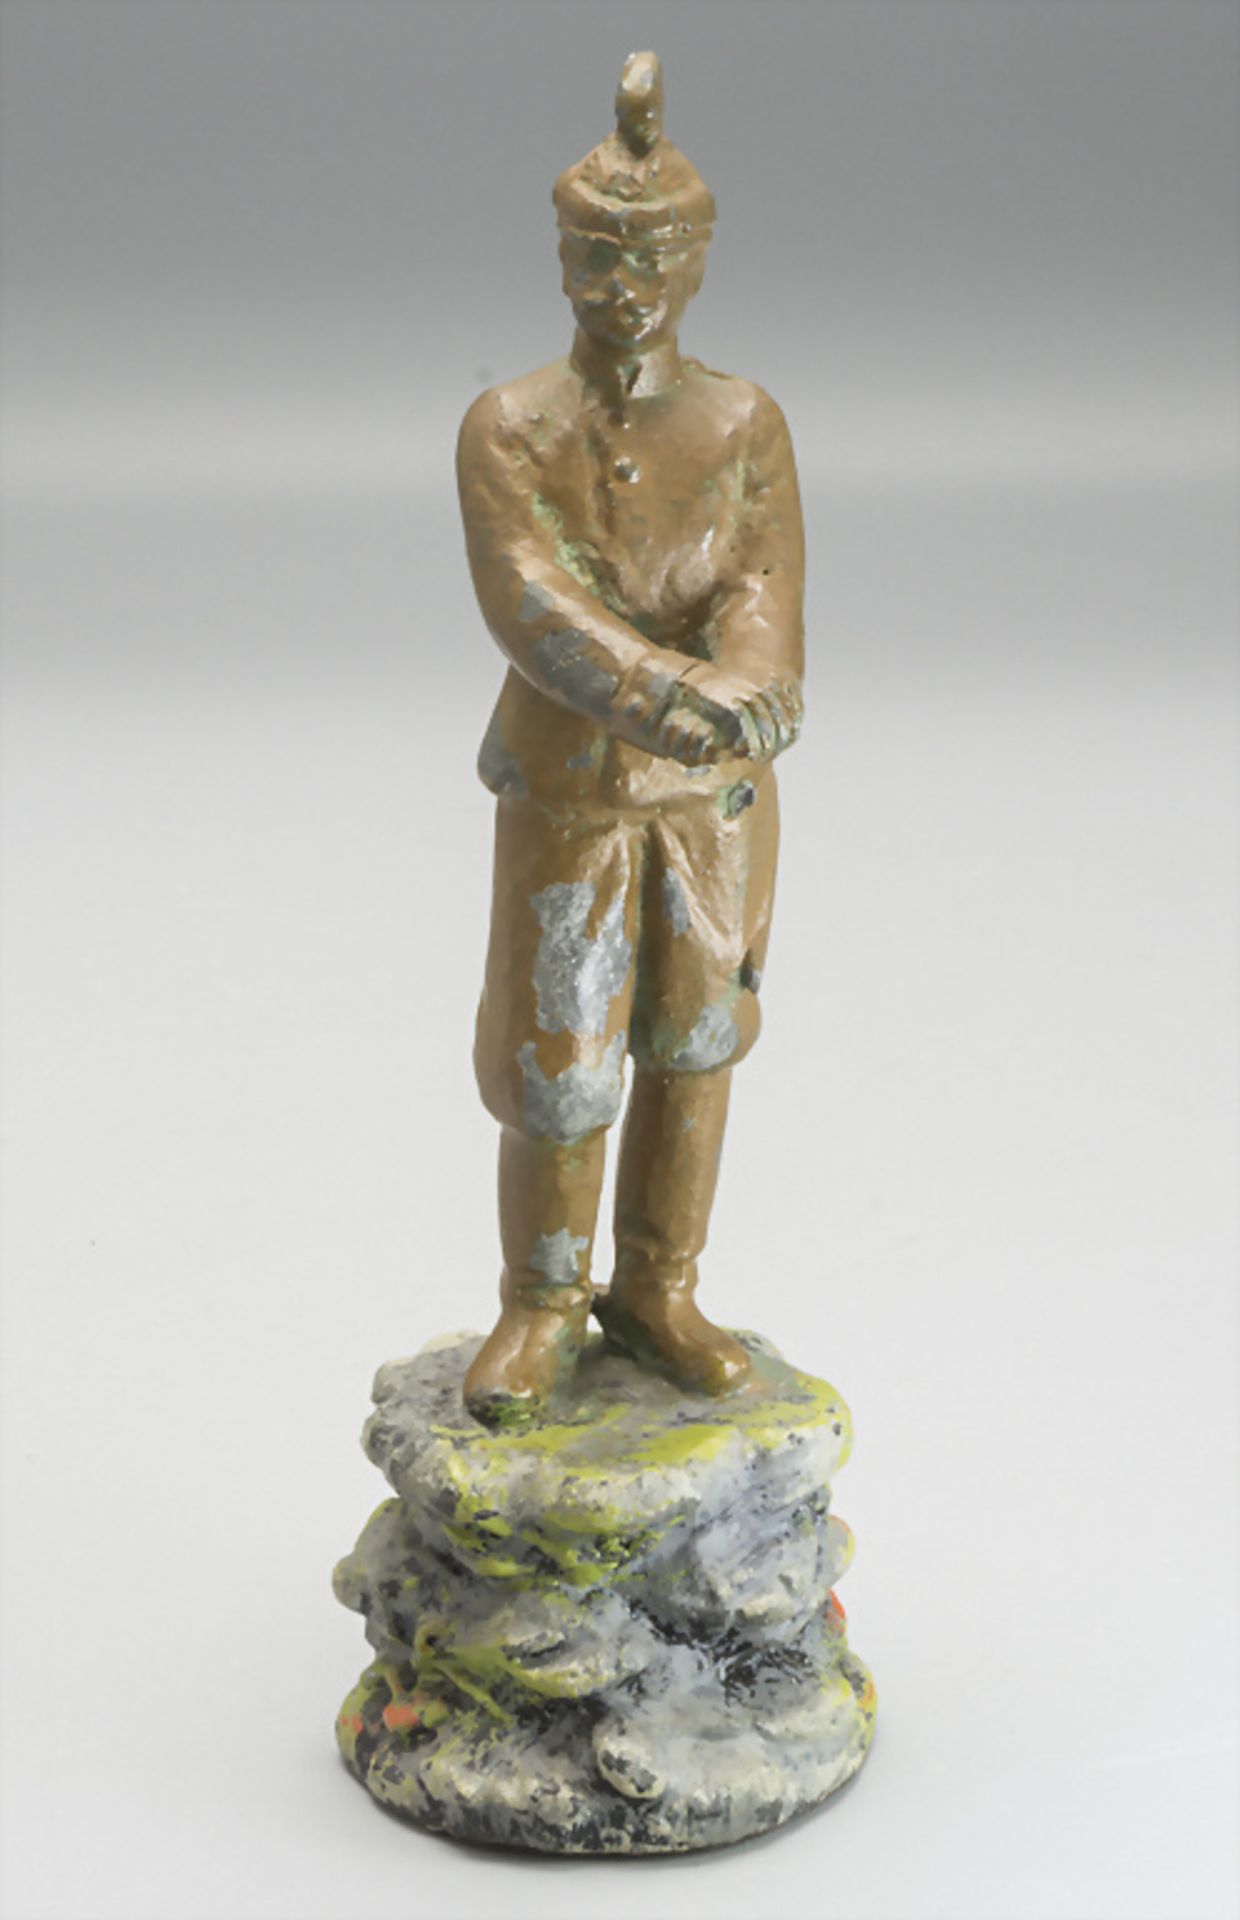 Zinnsoldatenfigur mit Sturmhaube / A tin soldier figurine with balaclava, um 1900